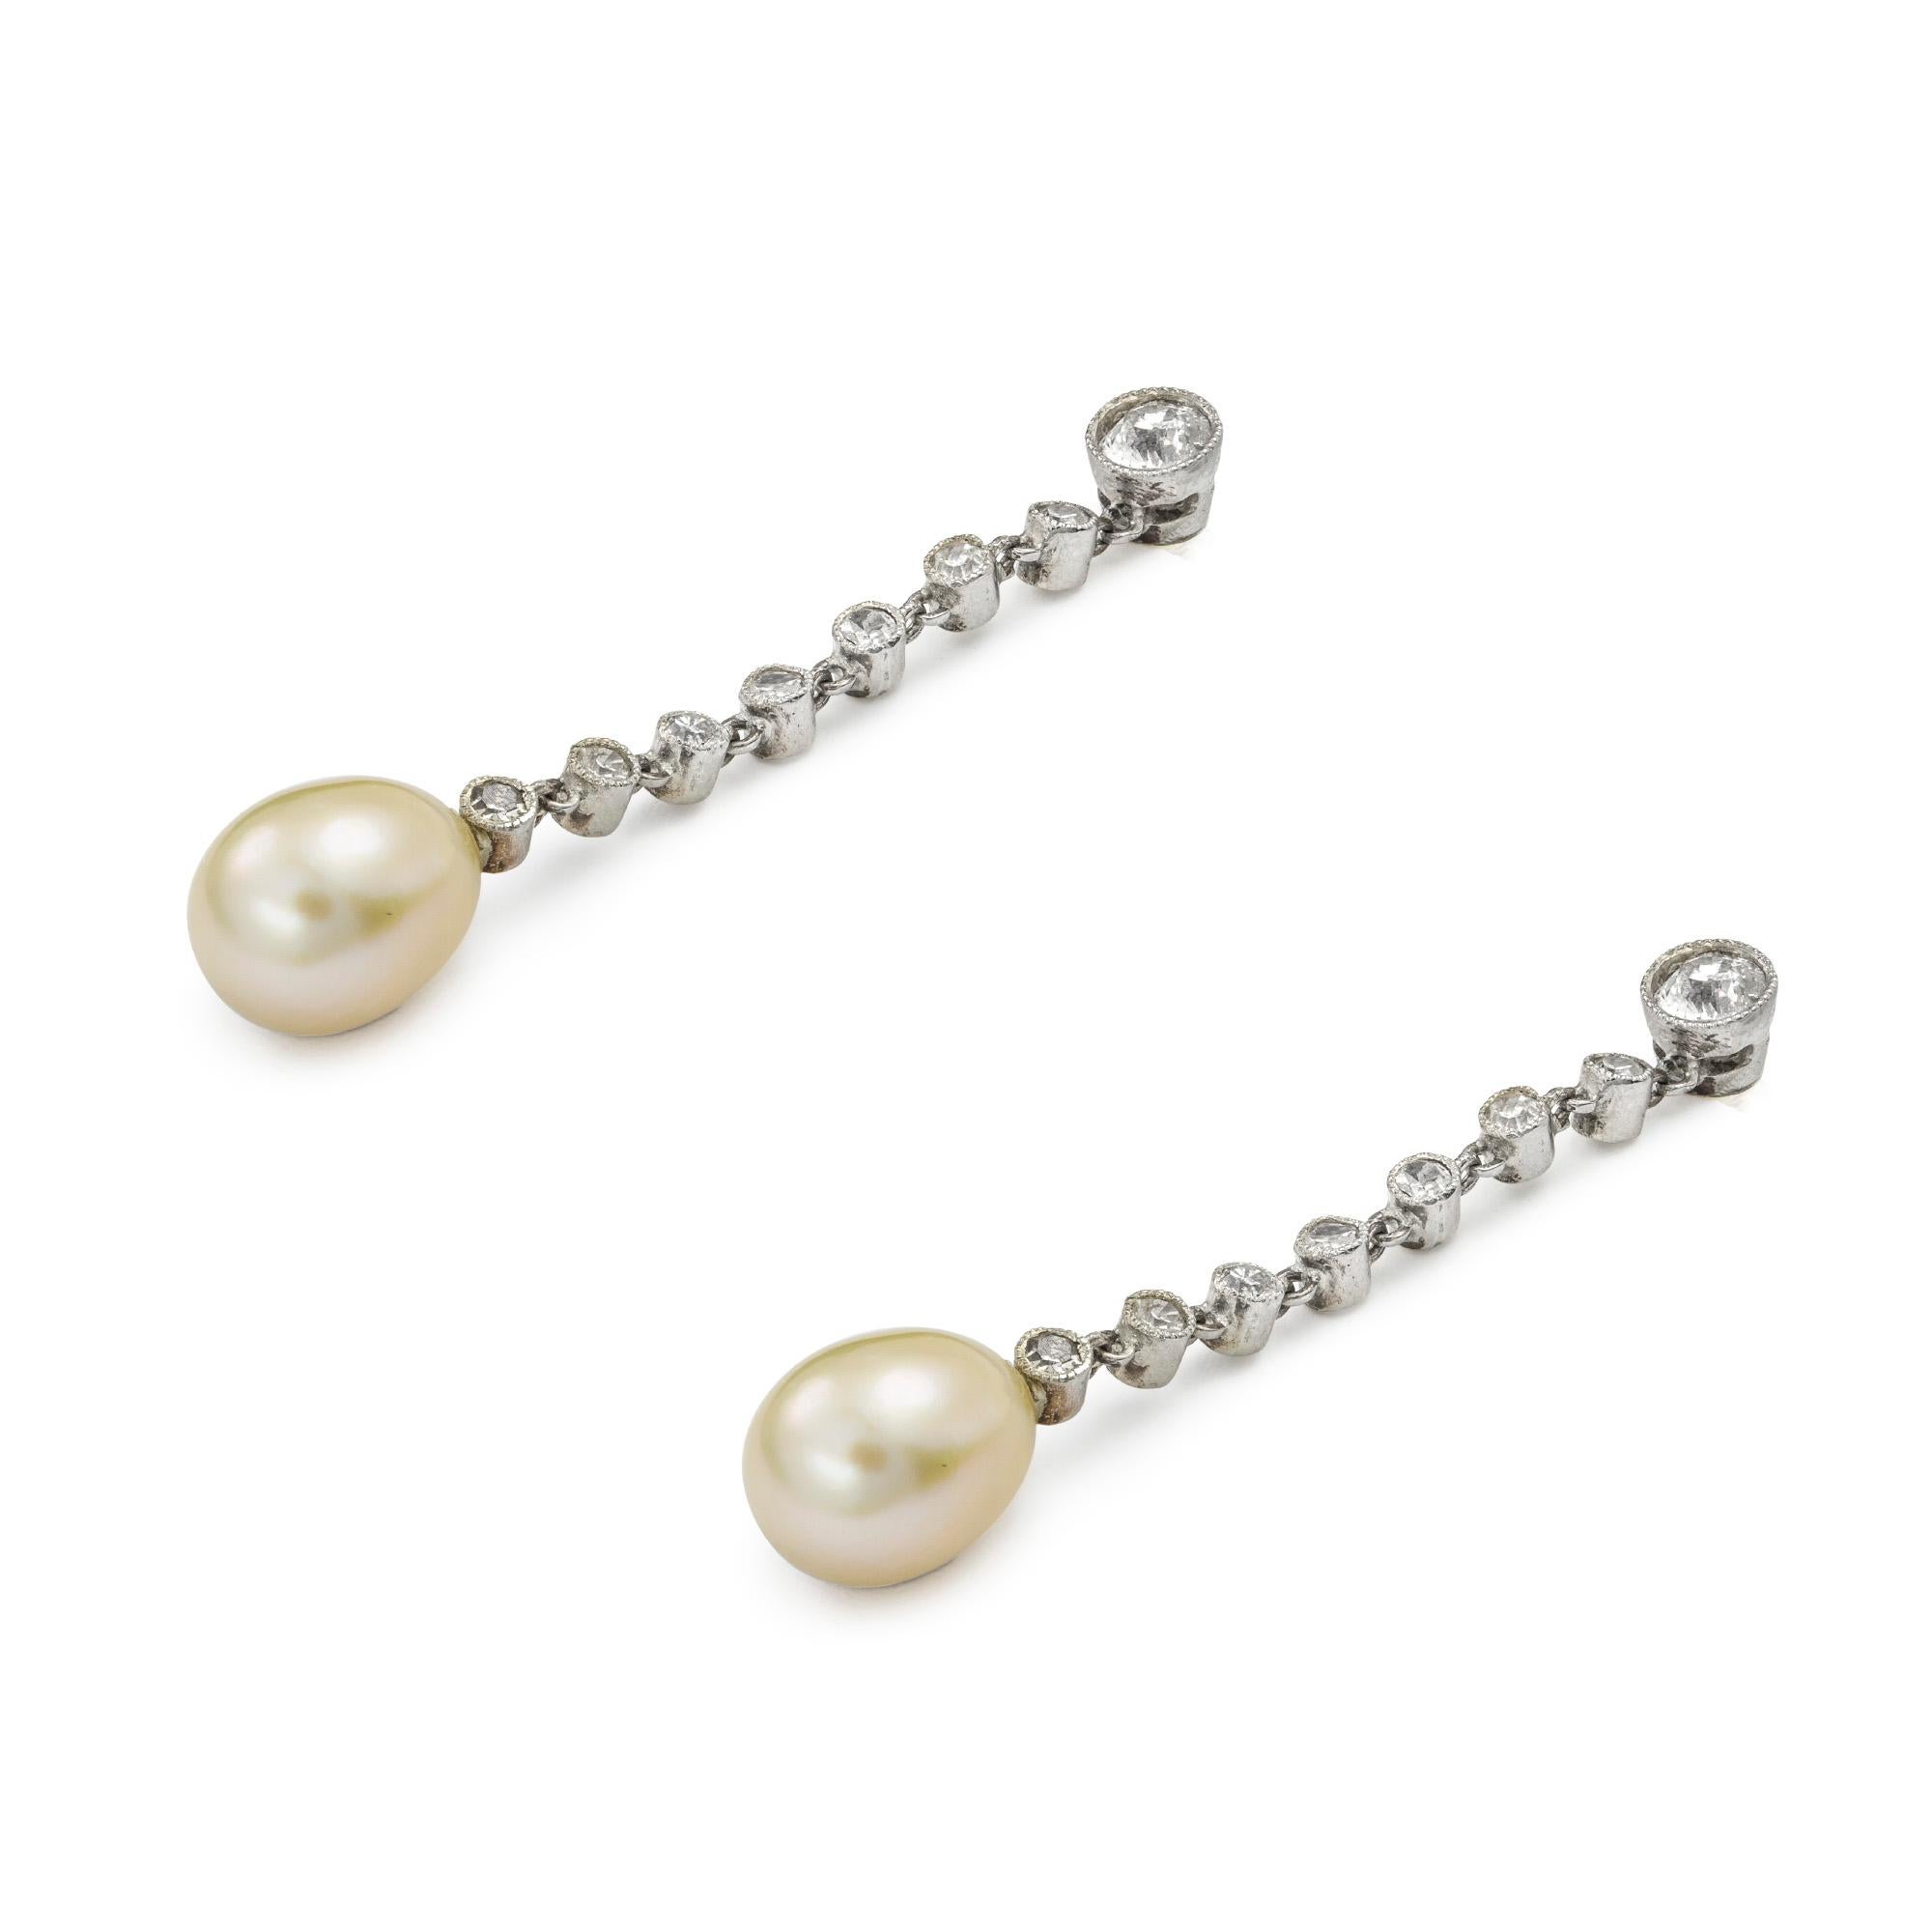 Ein Paar edwardianischer Perlen- und Diamanttropfenohrringe, jeder Ohrring mit einer tropfenförmigen Perle, begleitet von einem GCS-Bericht, der besagt, dass es sich um natürliche Salzwasserperlen handelt, aufgehängt an einer Reihe von neun alten